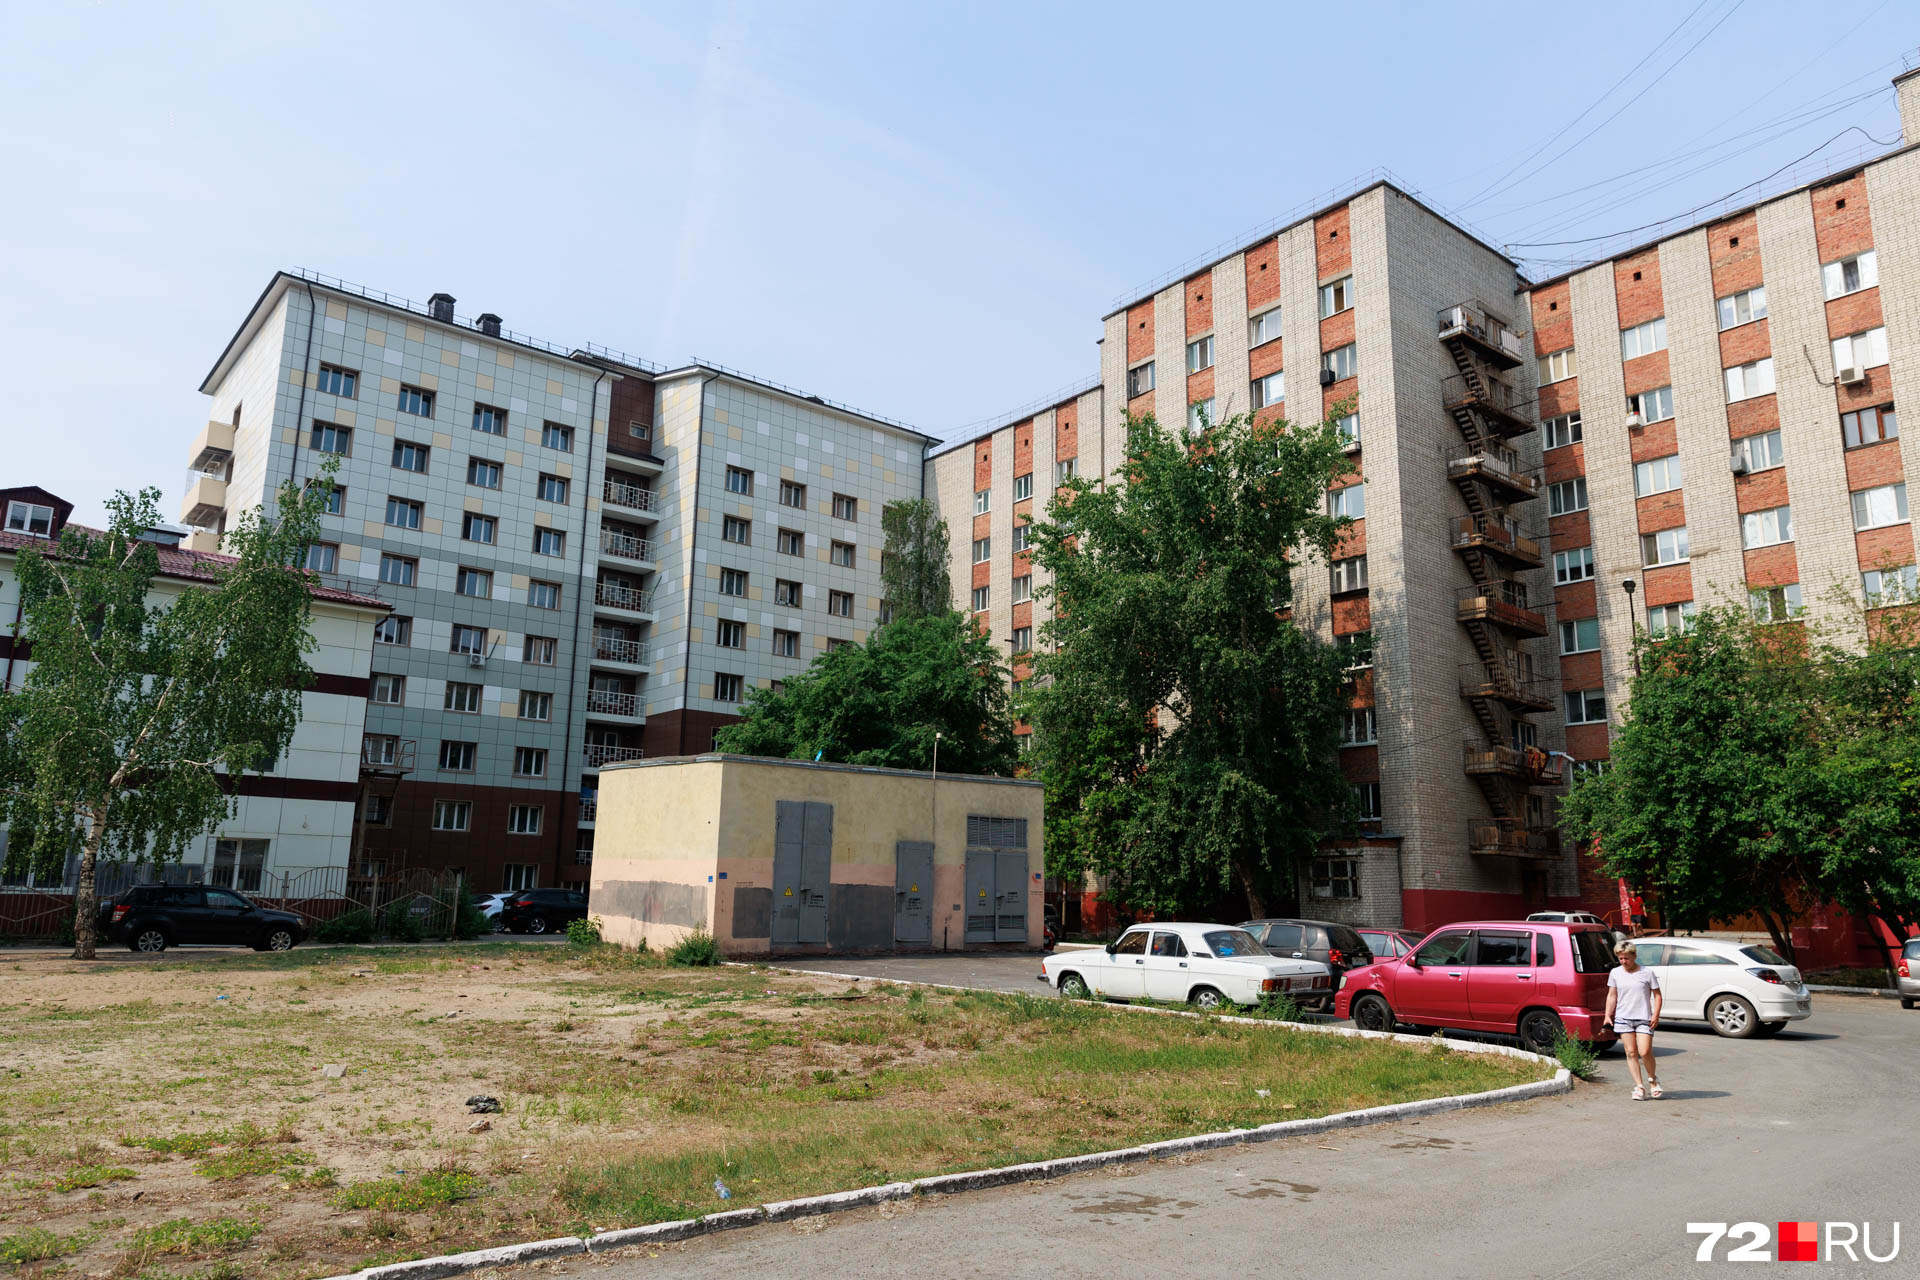 Улица Олимпийская — густонаселенный район с многоэтажными домами. Построен на излете советской эпохи